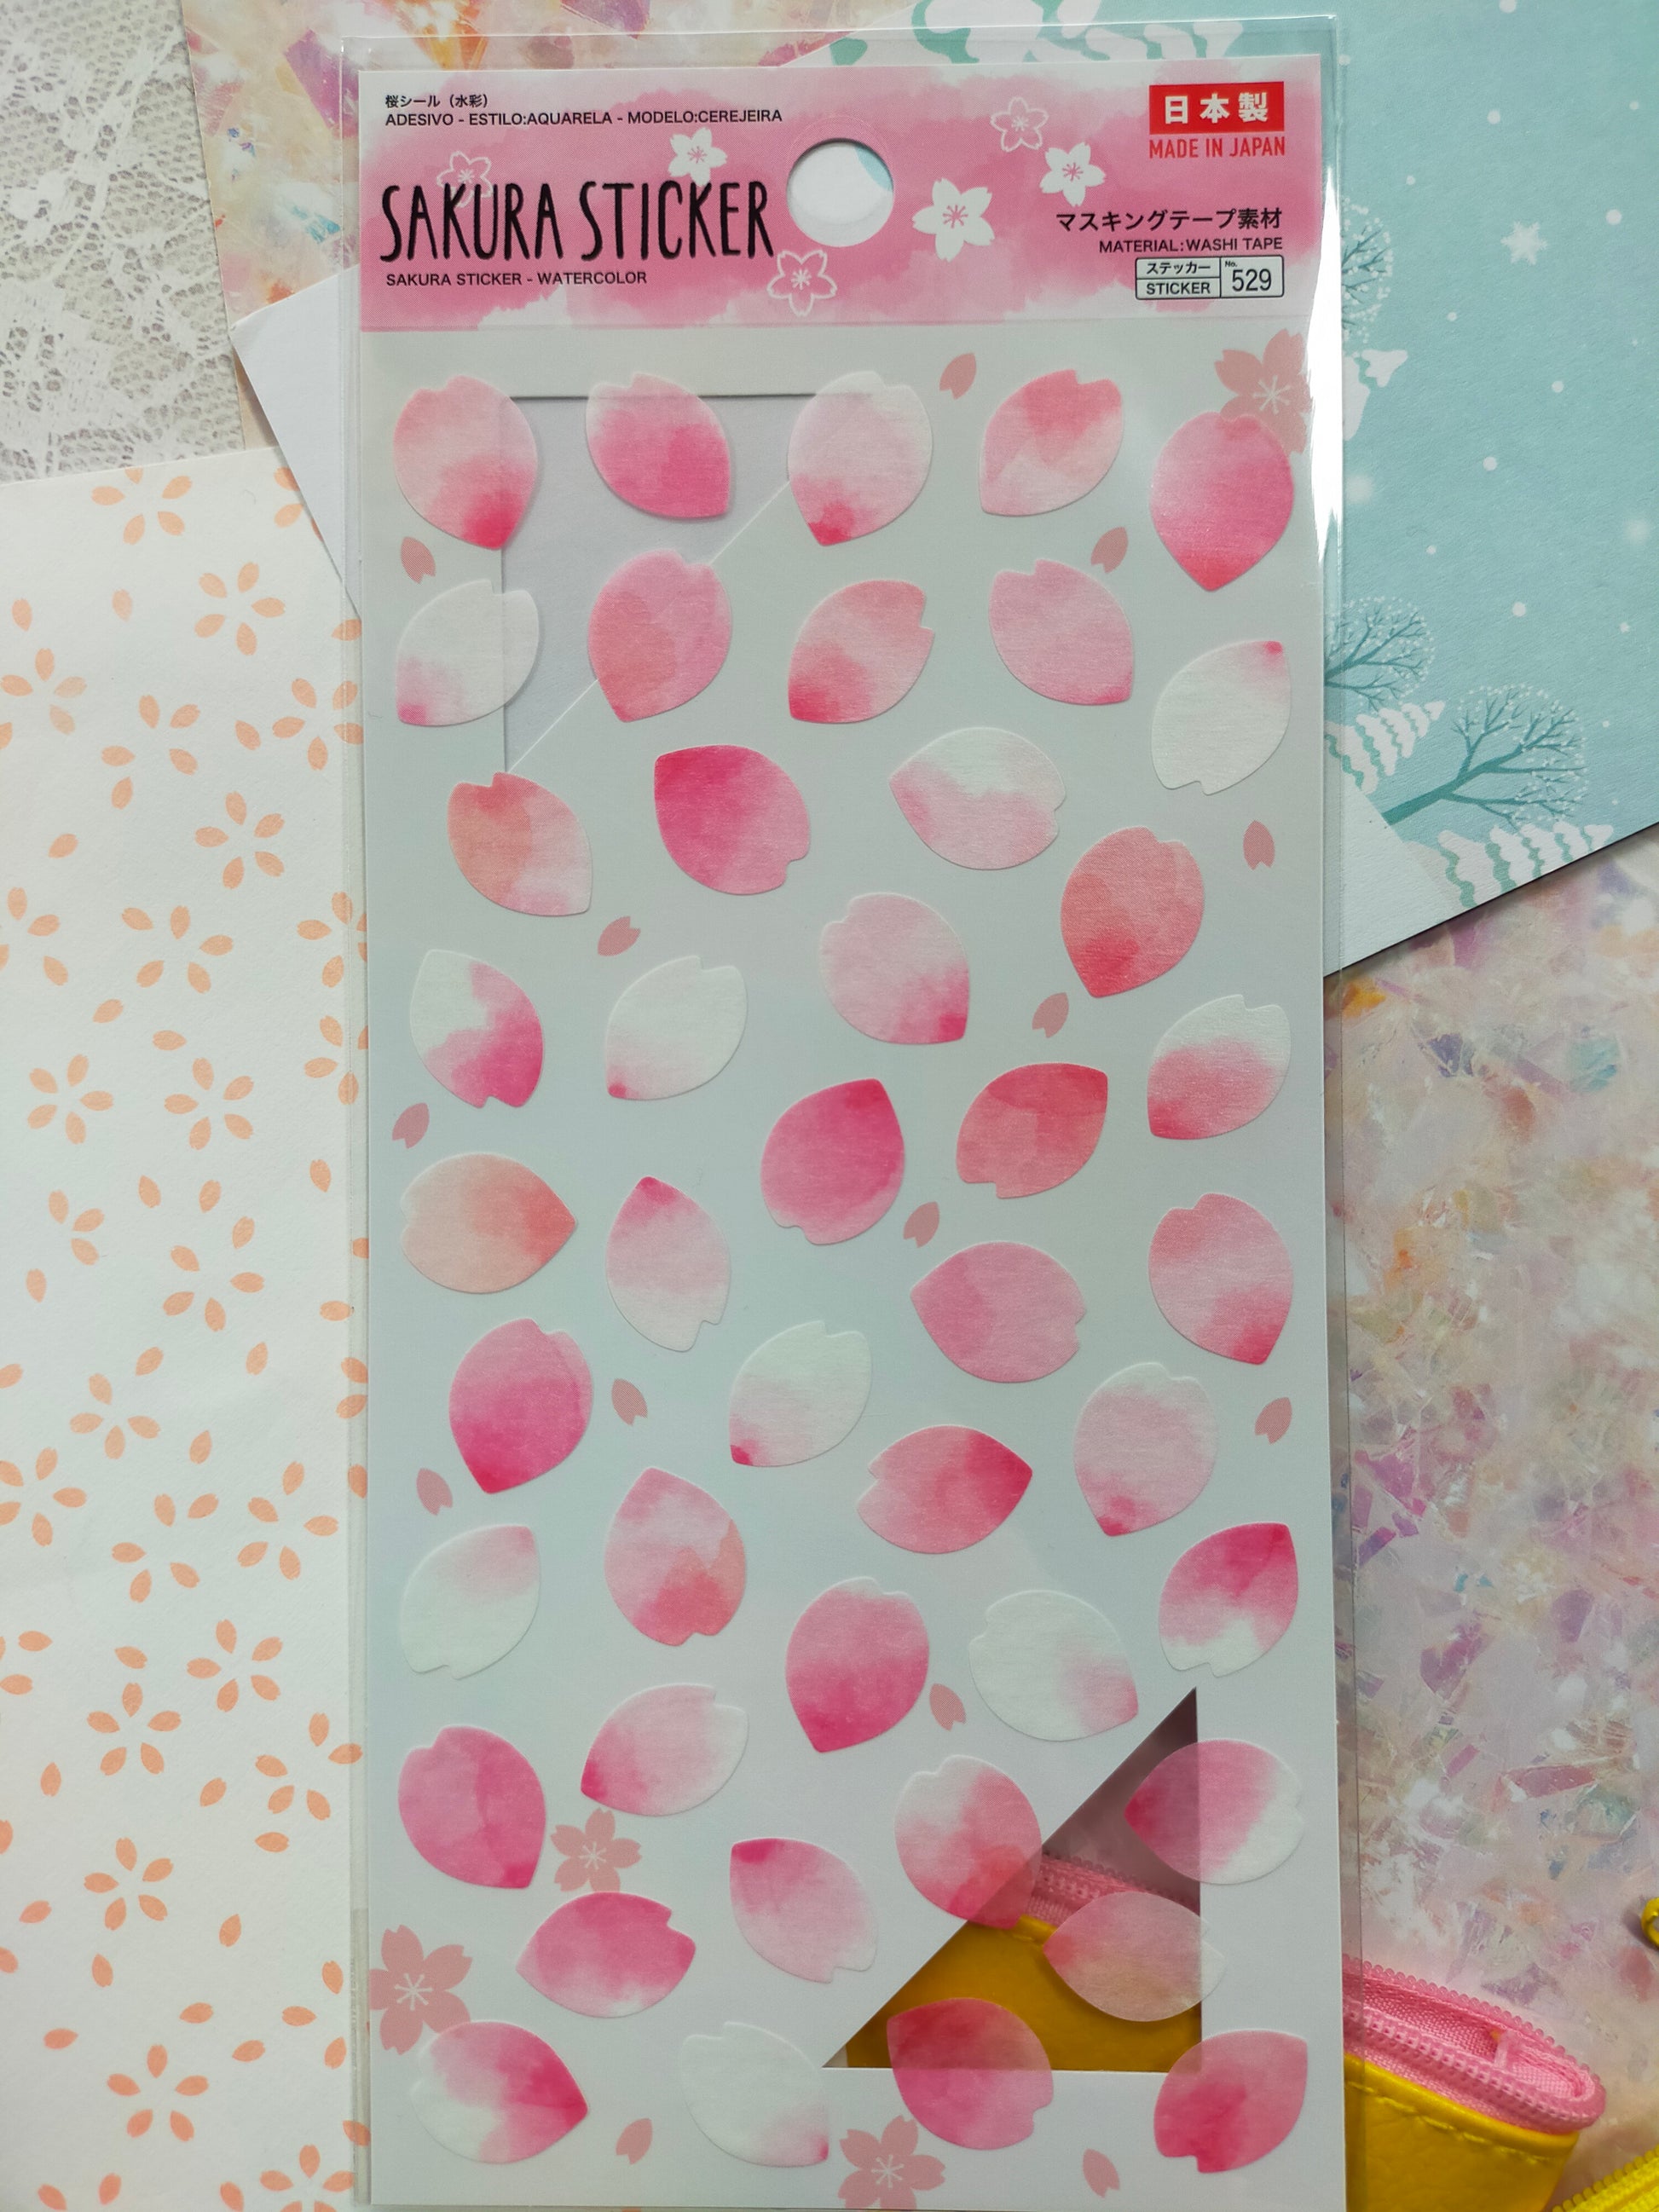 Spring Stickers white, daiso_Sakura / Ume